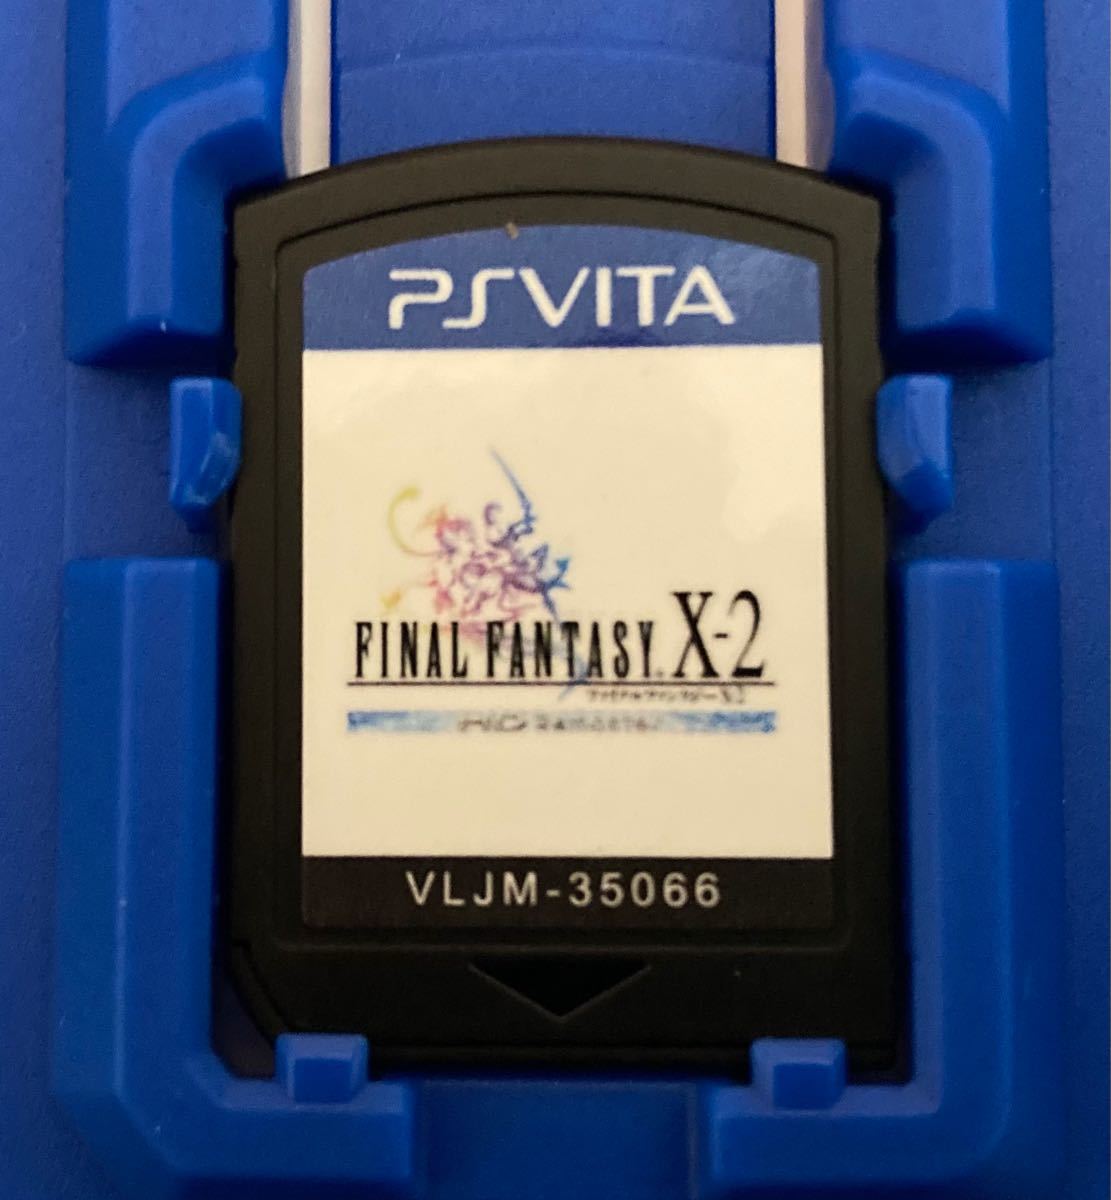 PS Vita ファイナルファンタジーX/X-2 HD Remaster TWIN PACK 